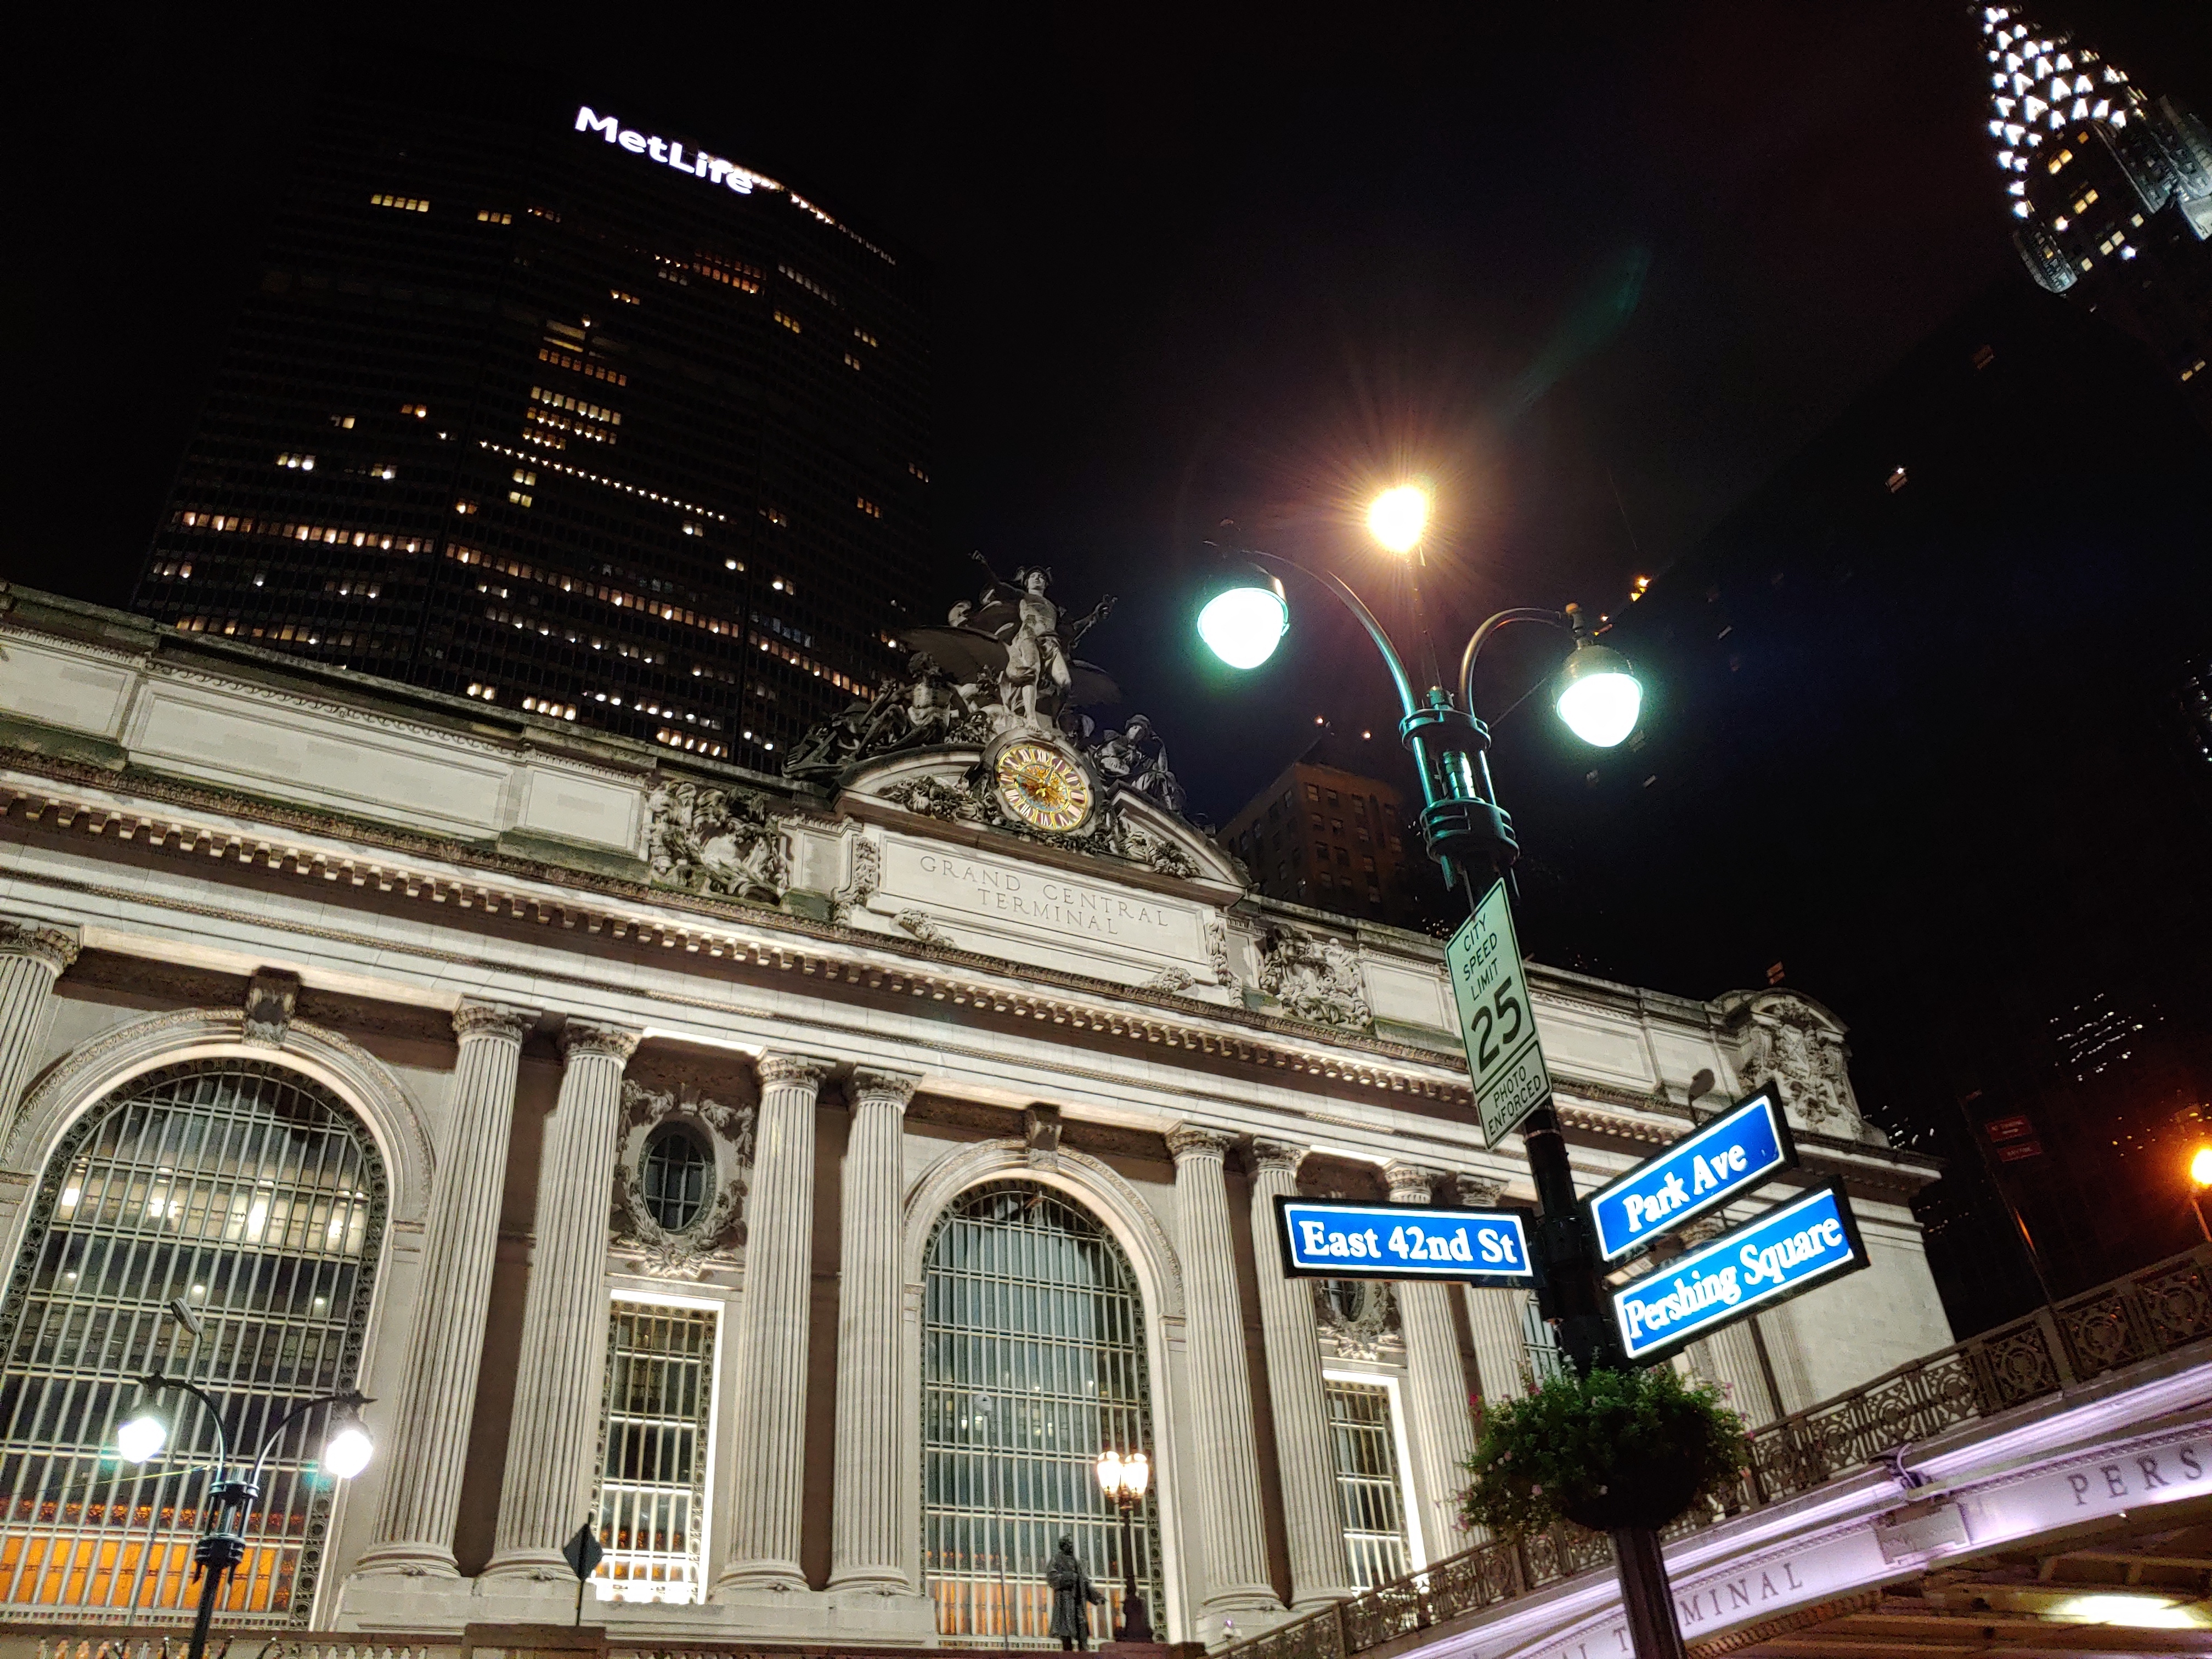 LG V40 saa otettua tyylikkään kuvan Grand Central Stationista myös pimeällä. Otos on riittävän terävä yökuvaksi.